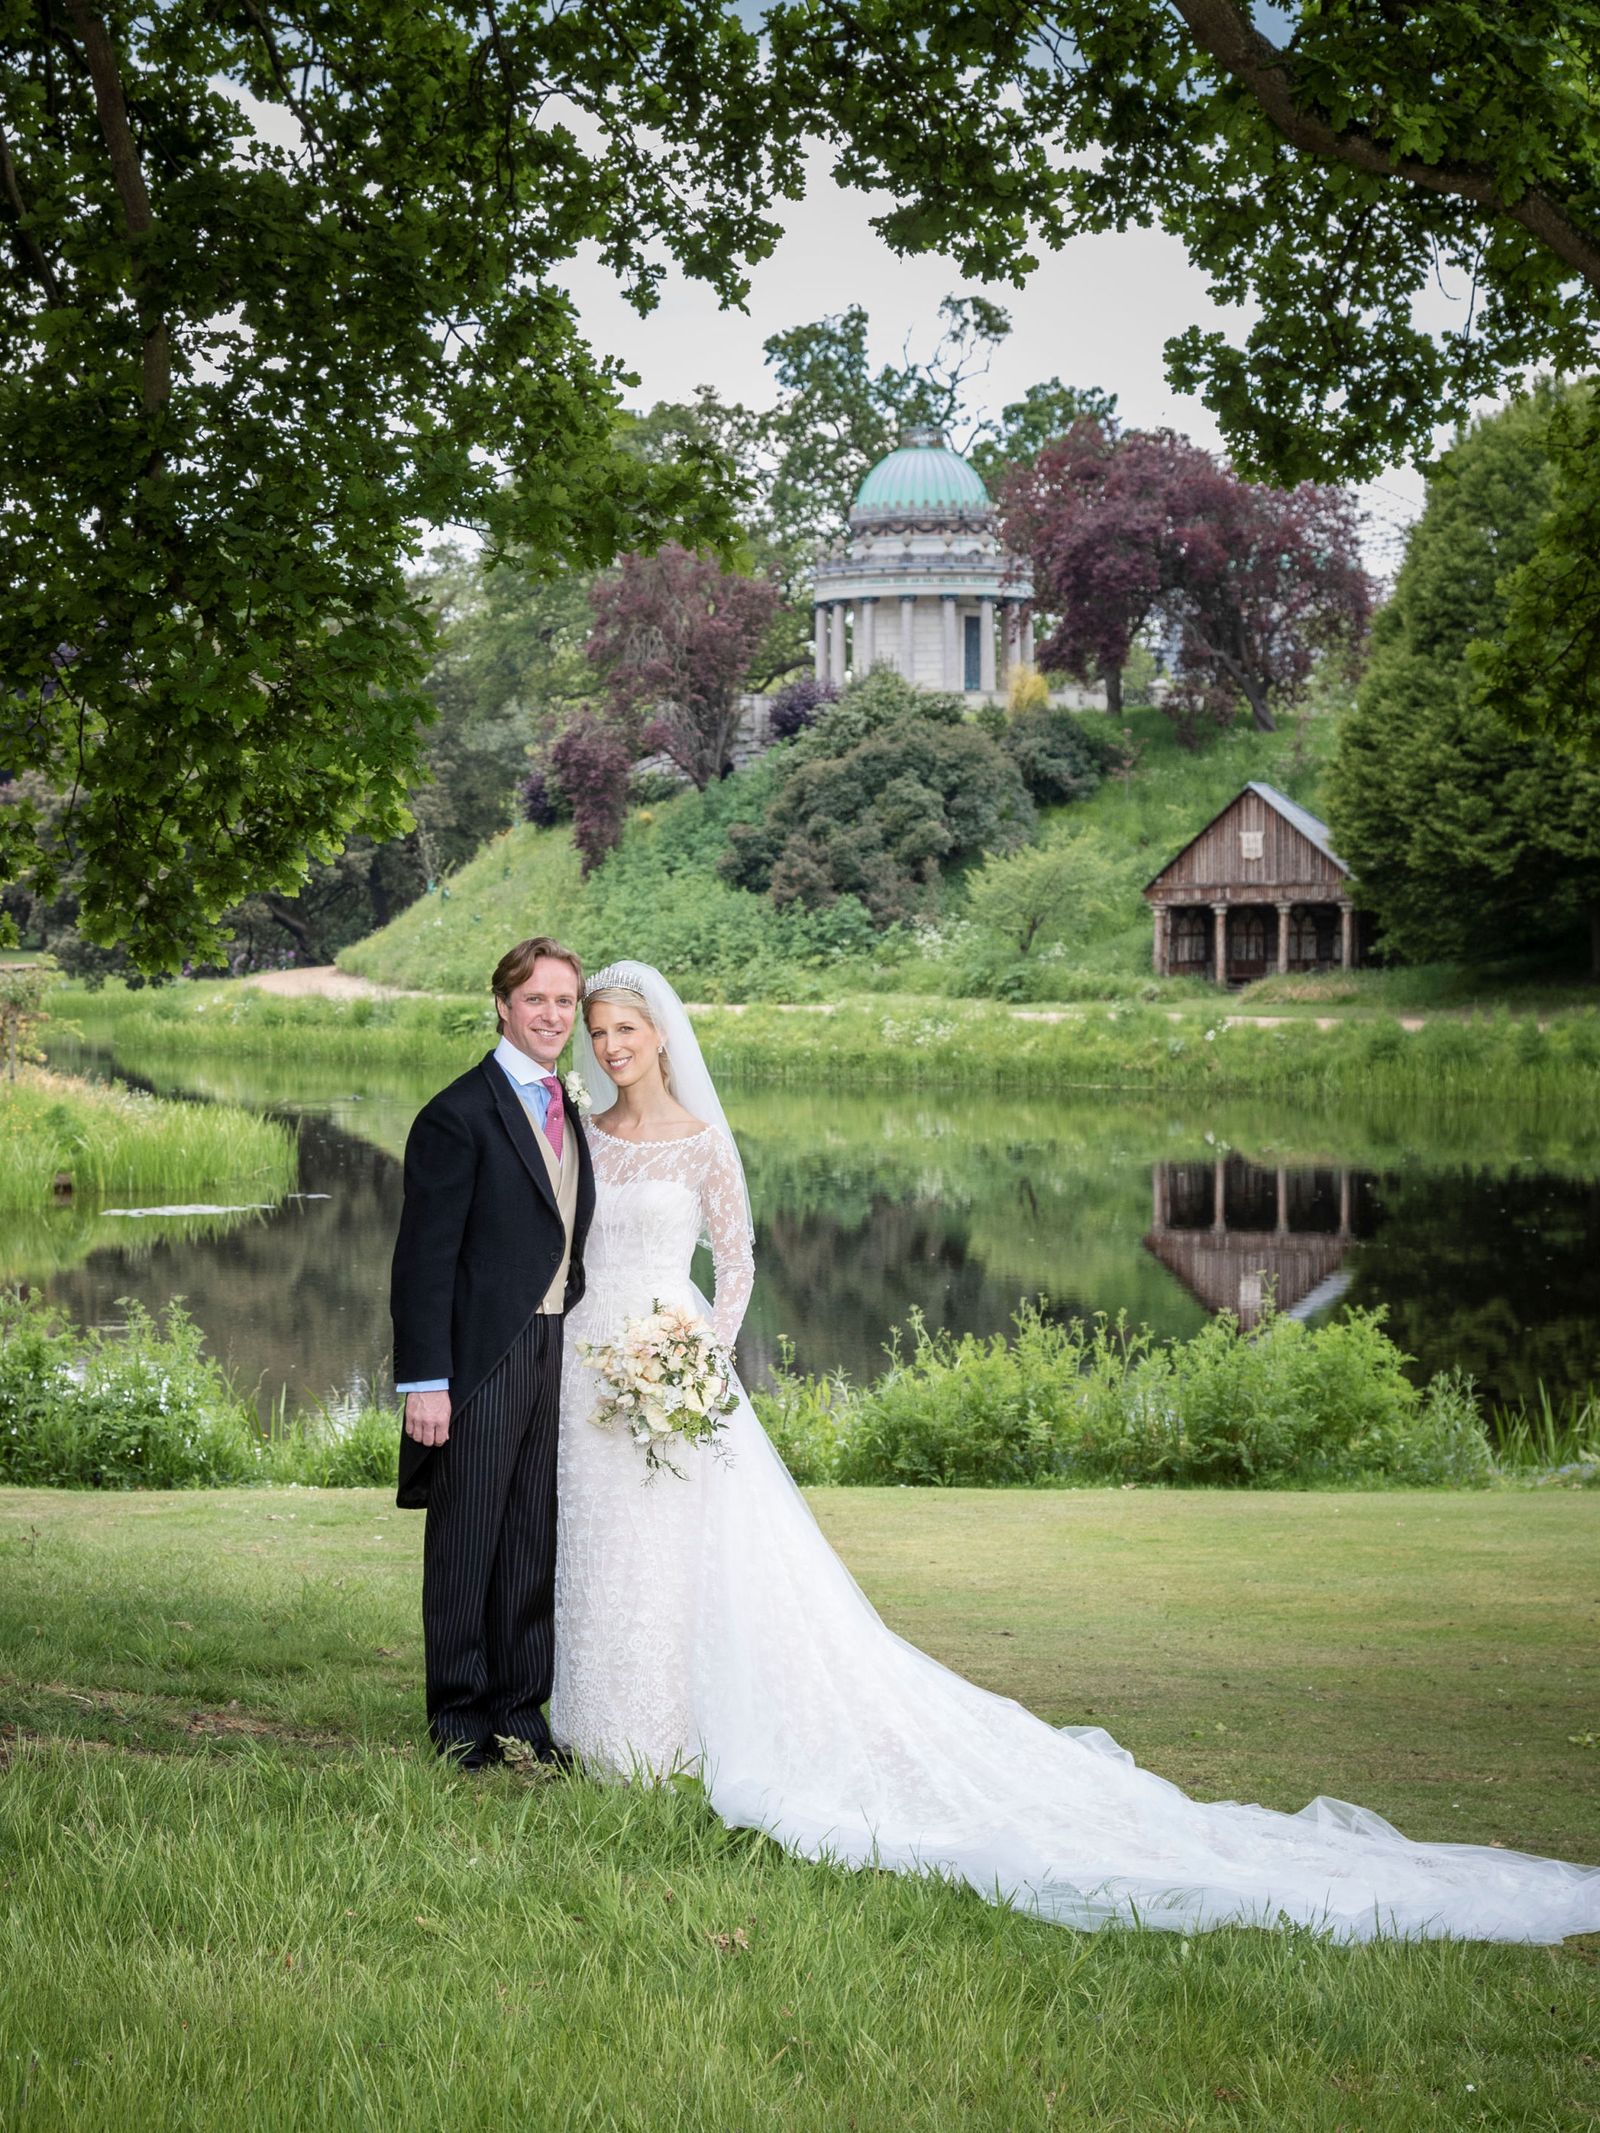 así fue la boda del fallecido thomas kingston y gabriella windsor hace 5 años: de los invitados al vestido de la novia y la tiara